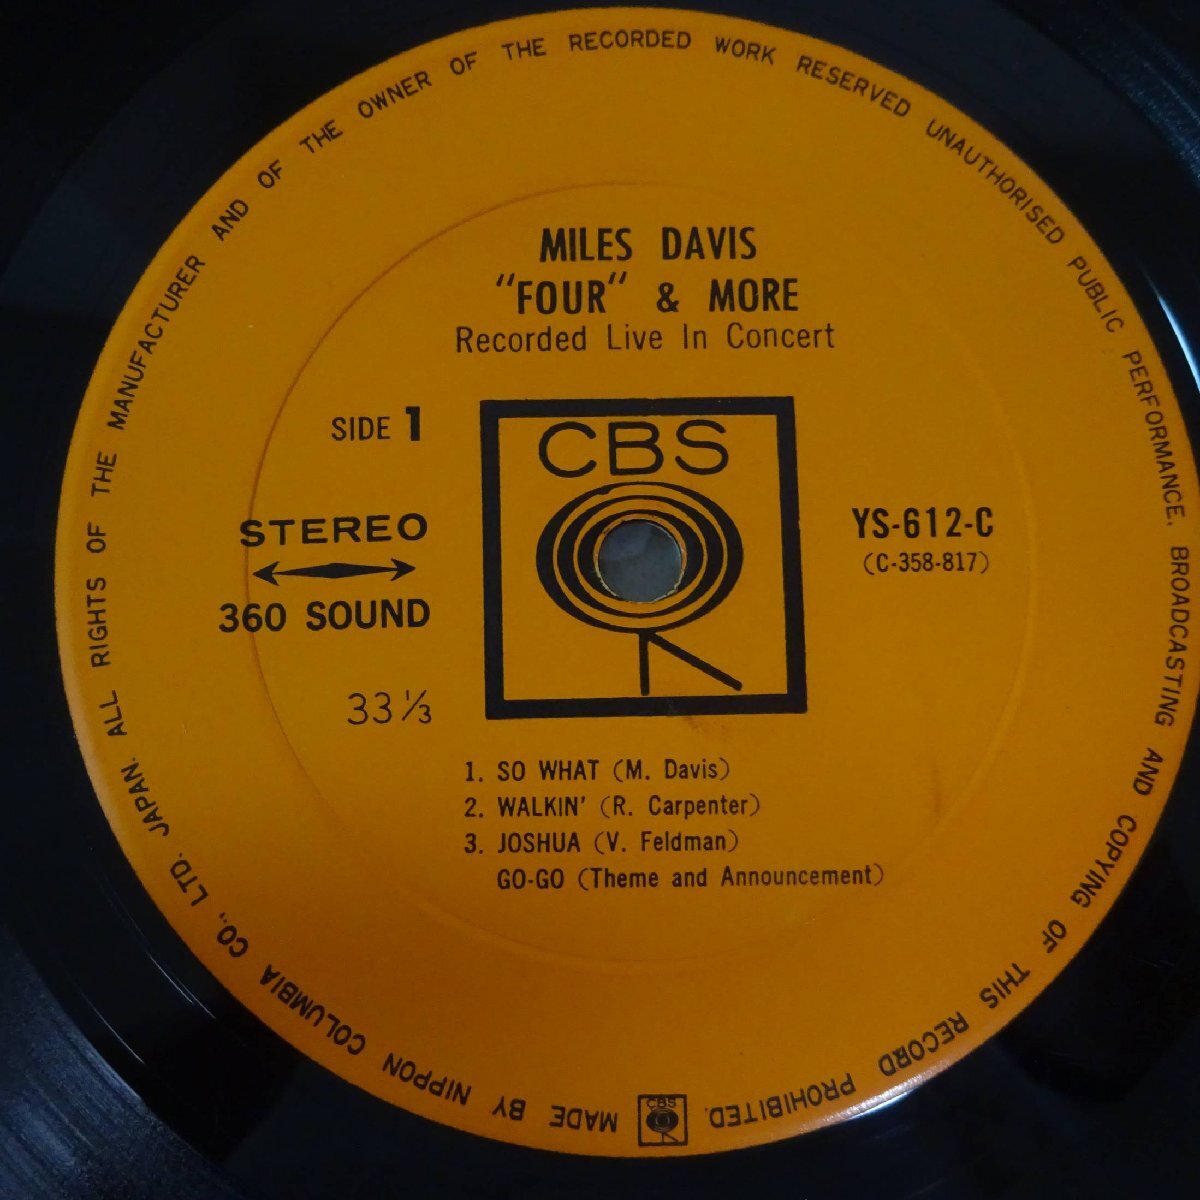 11186453;【国内盤/CBS/ペラジャケ】Miles Davis / Four' & More - Recorded Live In Concert_画像3